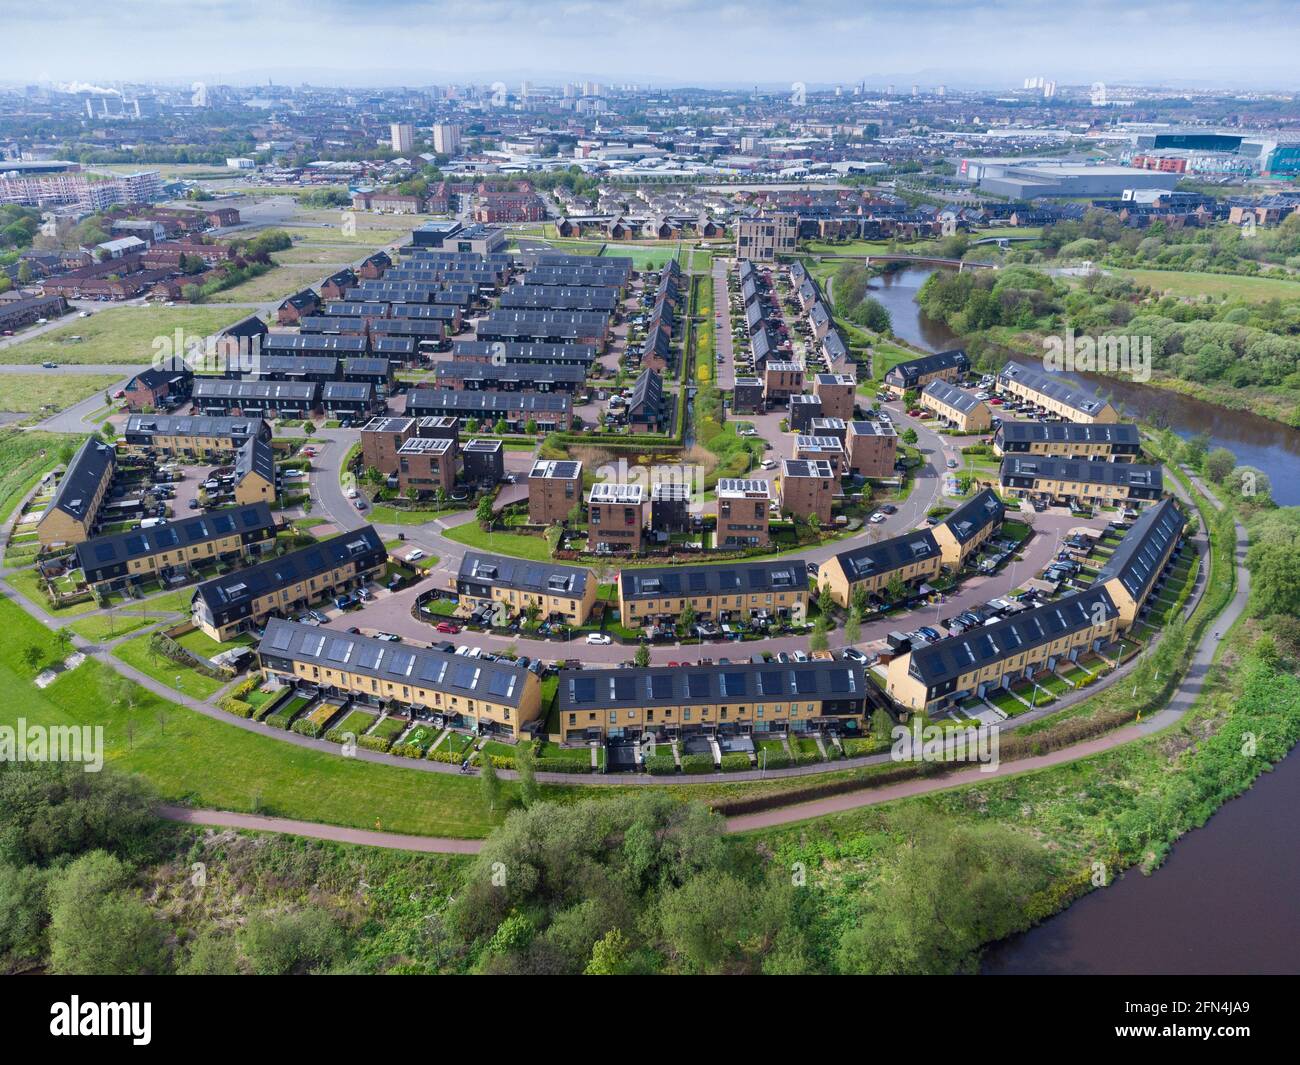 Vue aérienne de l'ancien village des athlètes aménagement de logements modernes sur les rives de la rivière Clyde à Dalmarnock, Glasgow, Écosse, Royaume-Uni Banque D'Images